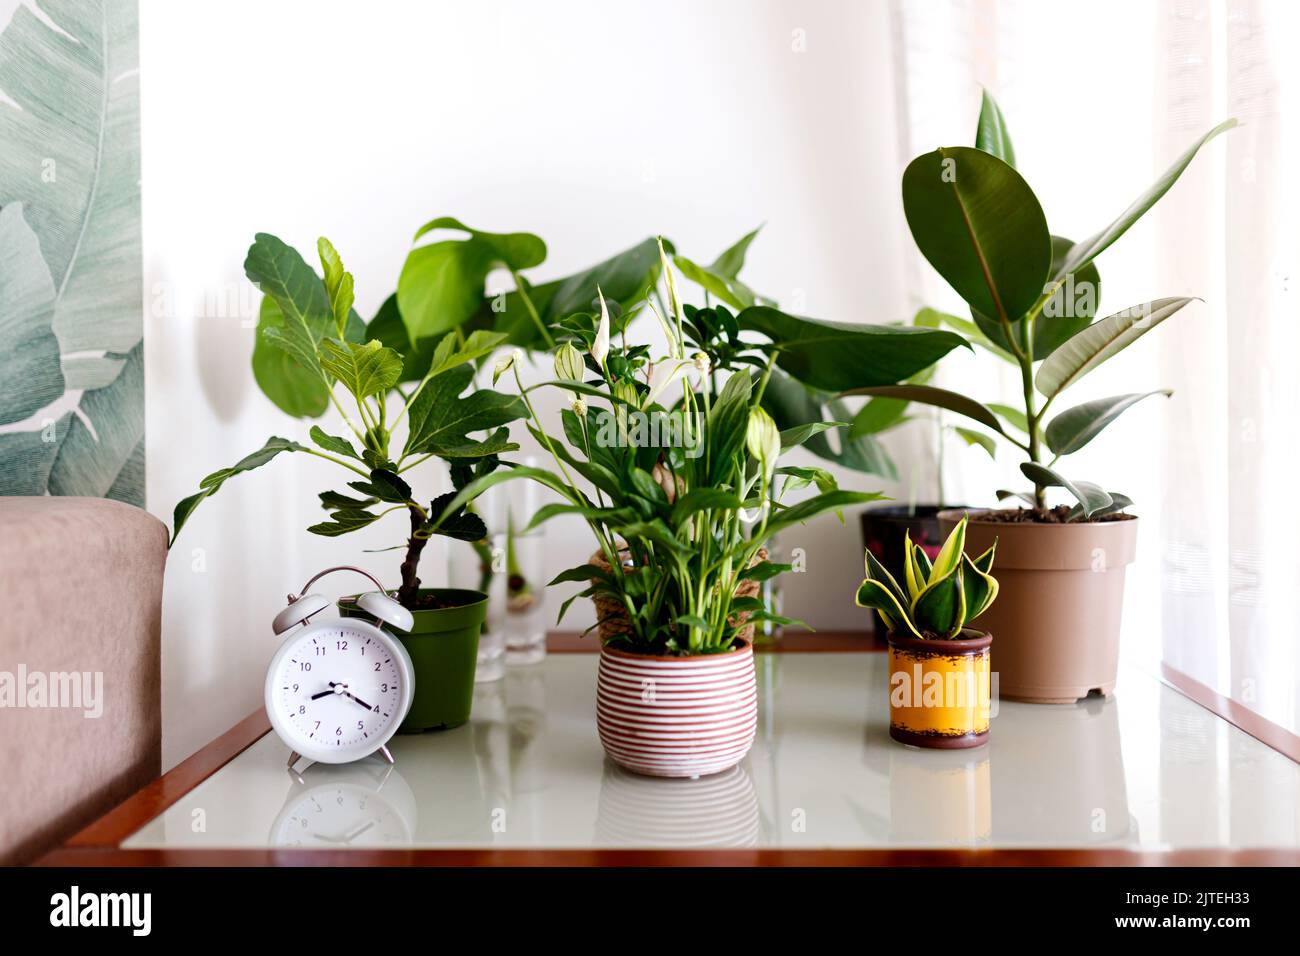 Una colección de diferentes plantas de la casa - monstera, spathiphyllum contra una pared blanca. Plantas caseras en un interior moderno. Foto de stock